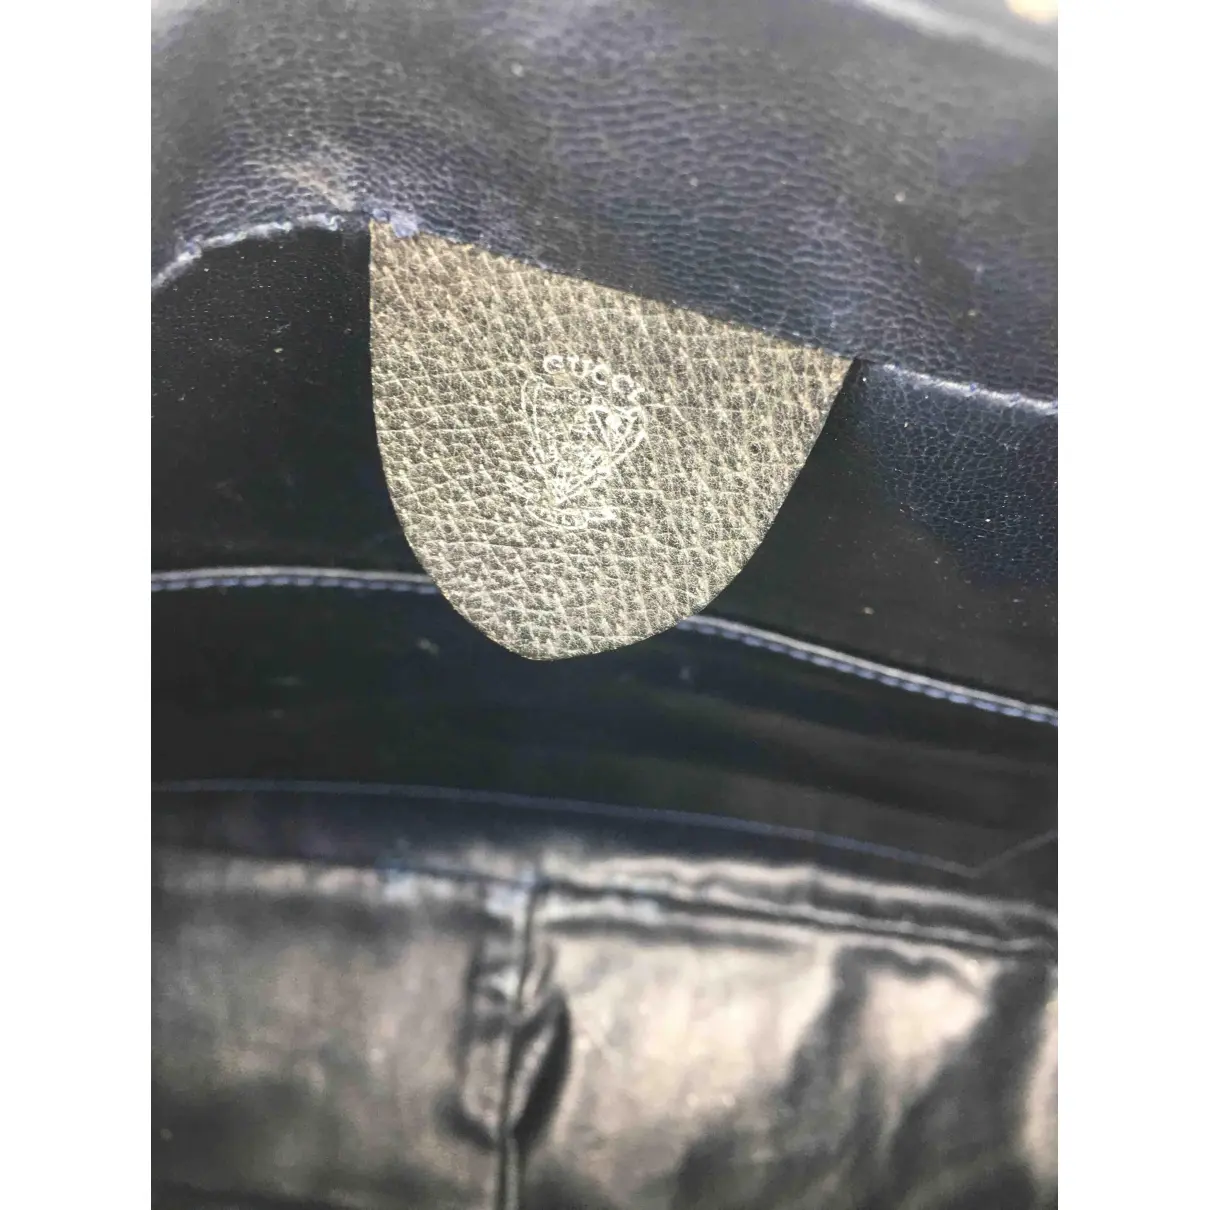 Buy Gucci Leather handbag online - Vintage